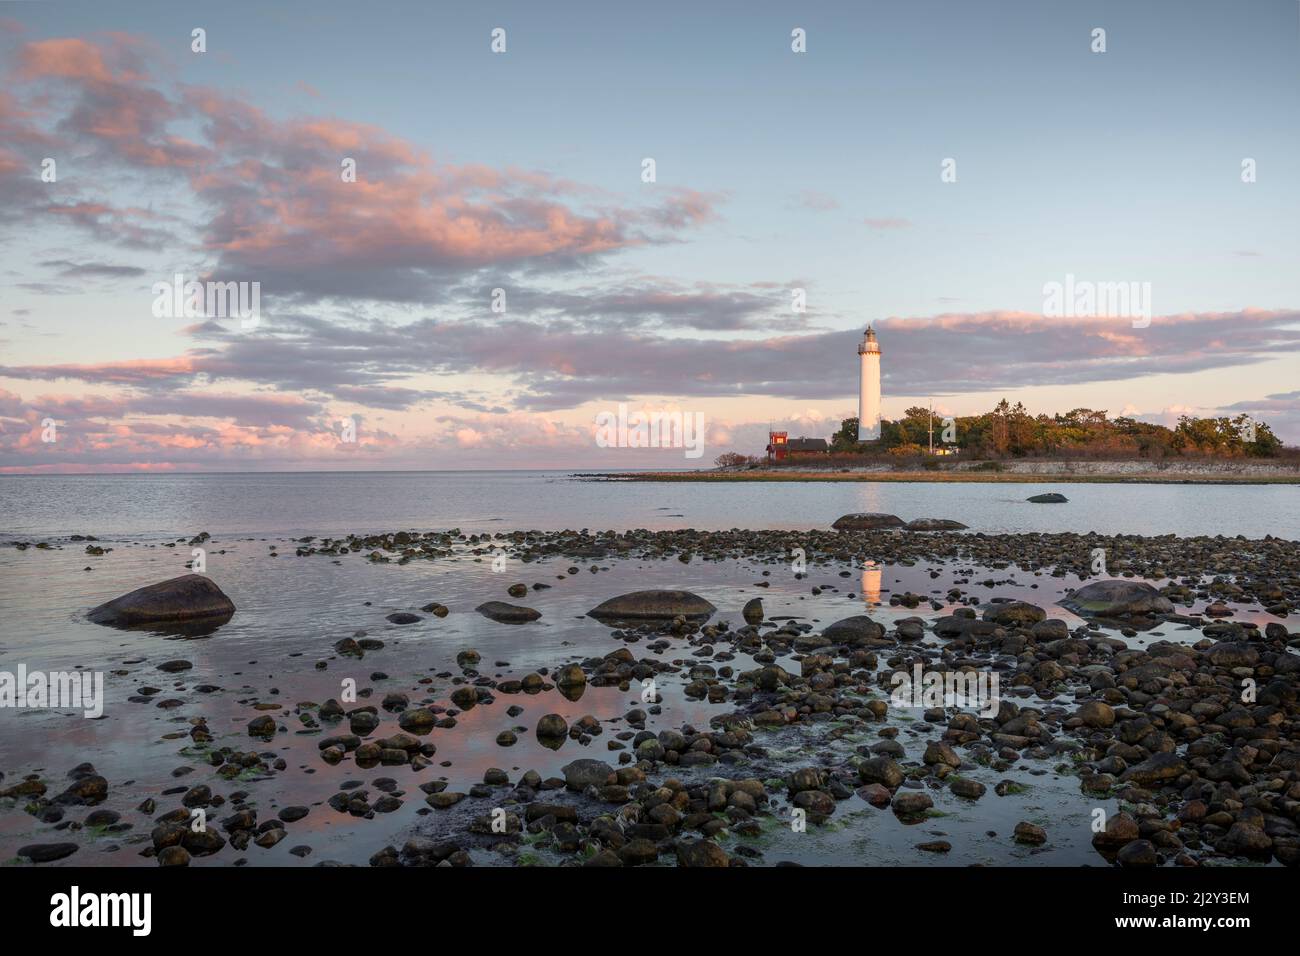 Leuchtturm Lange Erik mit réflexion im Wasser im Norden der Insel Öland im Osten von Schweden im Sonnenuntergang Banque D'Images